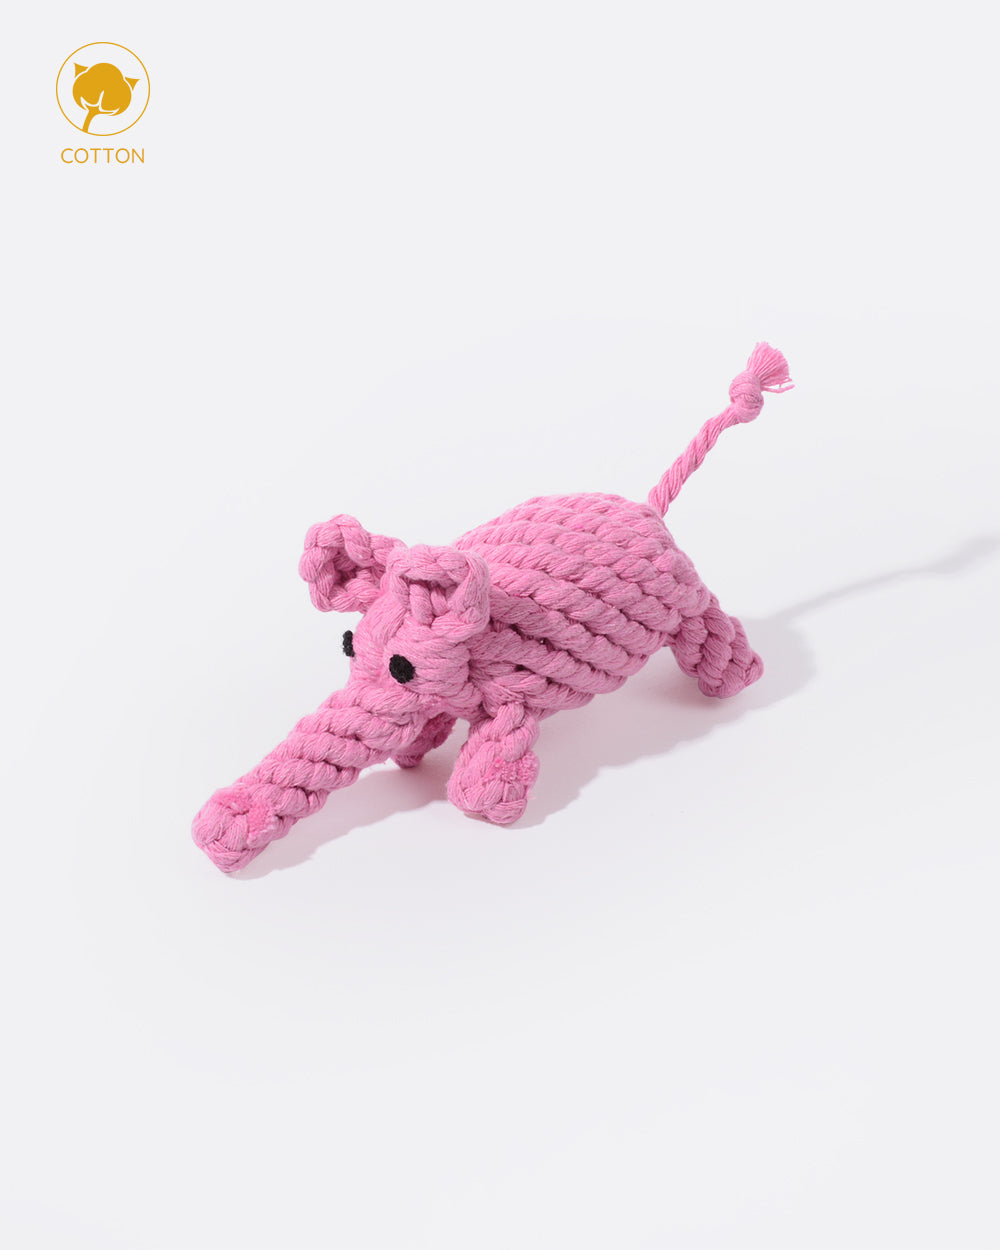 Animal Design Cotton Rope Dog Toy - Elephant